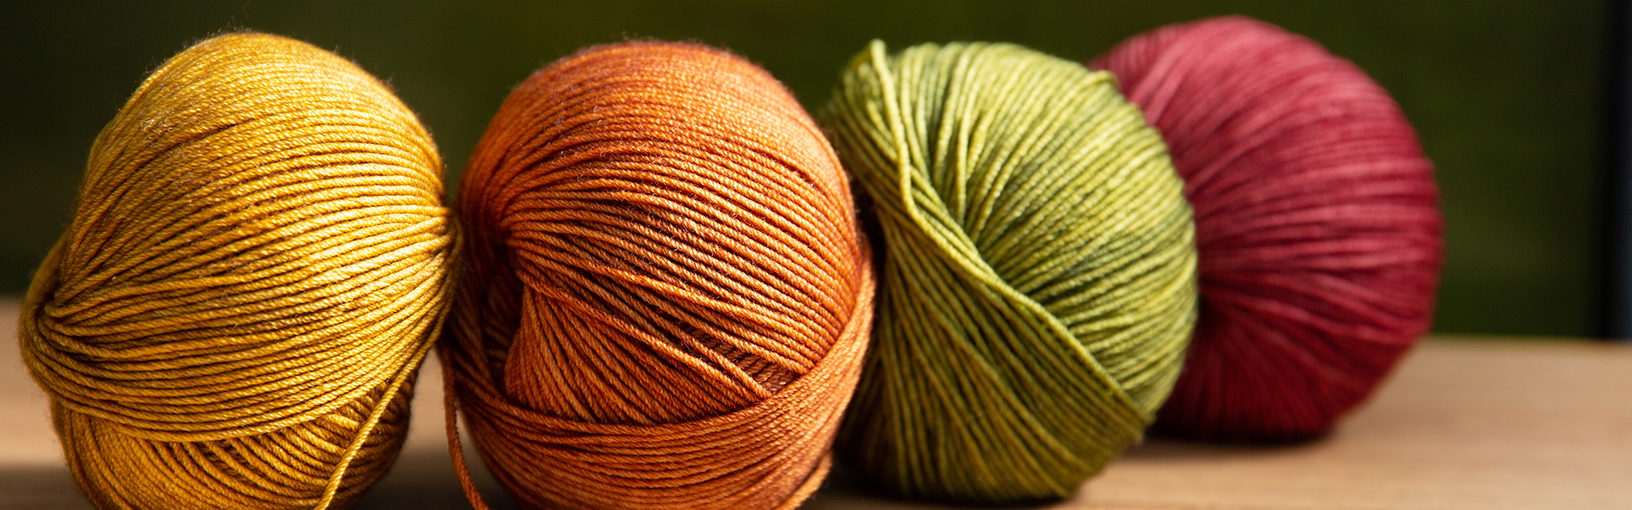 Garn av høy kvalitet til strikking, hekling og toving LANA GROSSA<br> ull & garn | Vår / Sommer